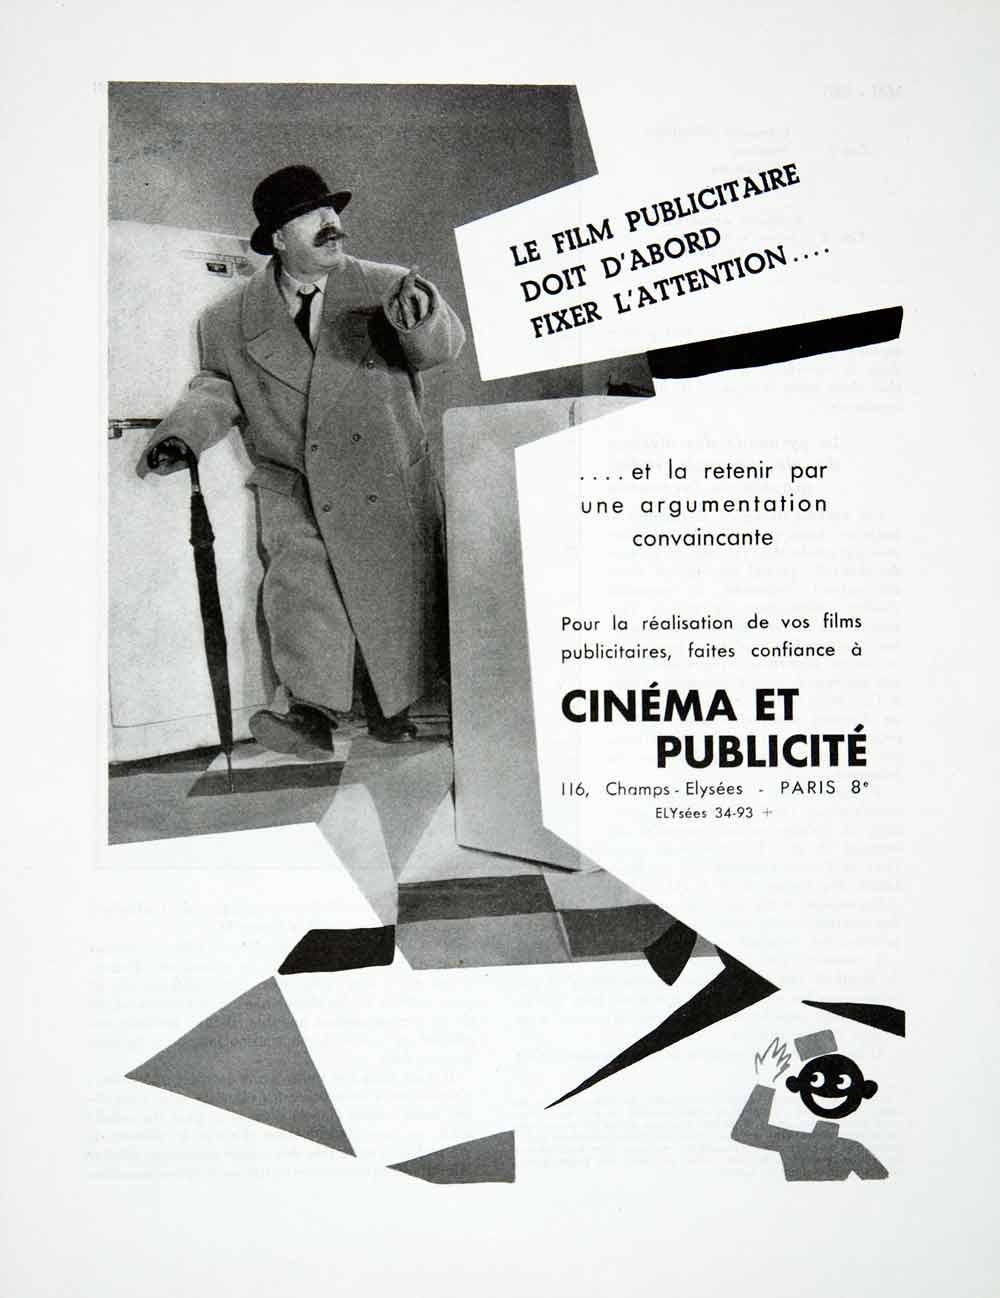 1955 Ad Cinema et Publicite Film Champs-Elysees Paris France French VEN2